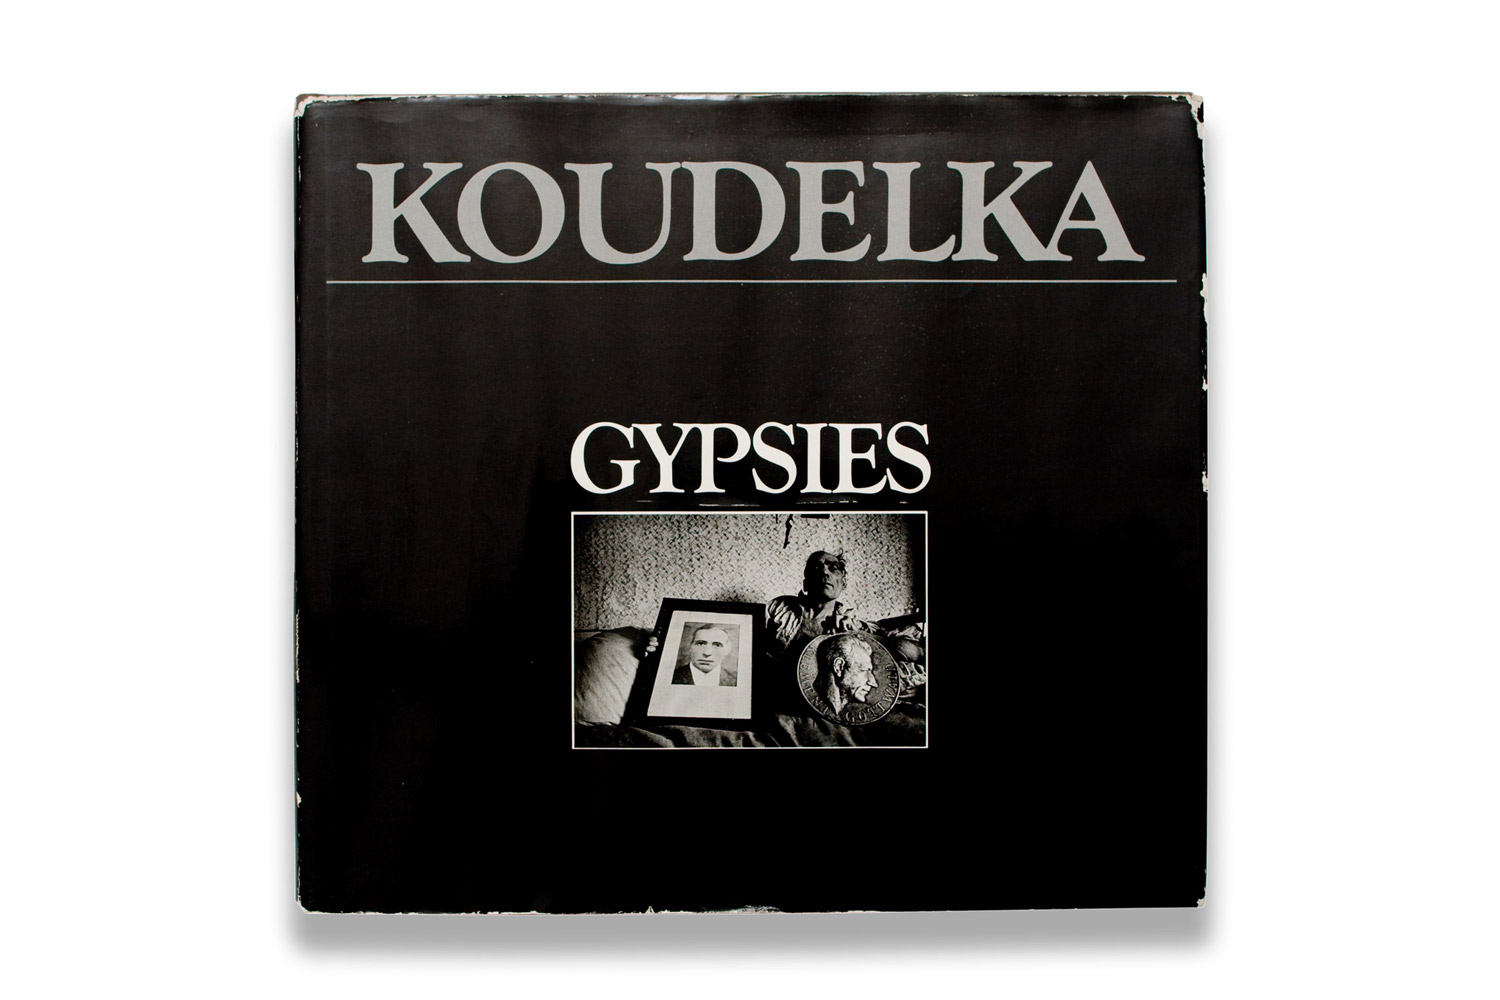 Gypsies by Josef Koudelka, first printing 1975.